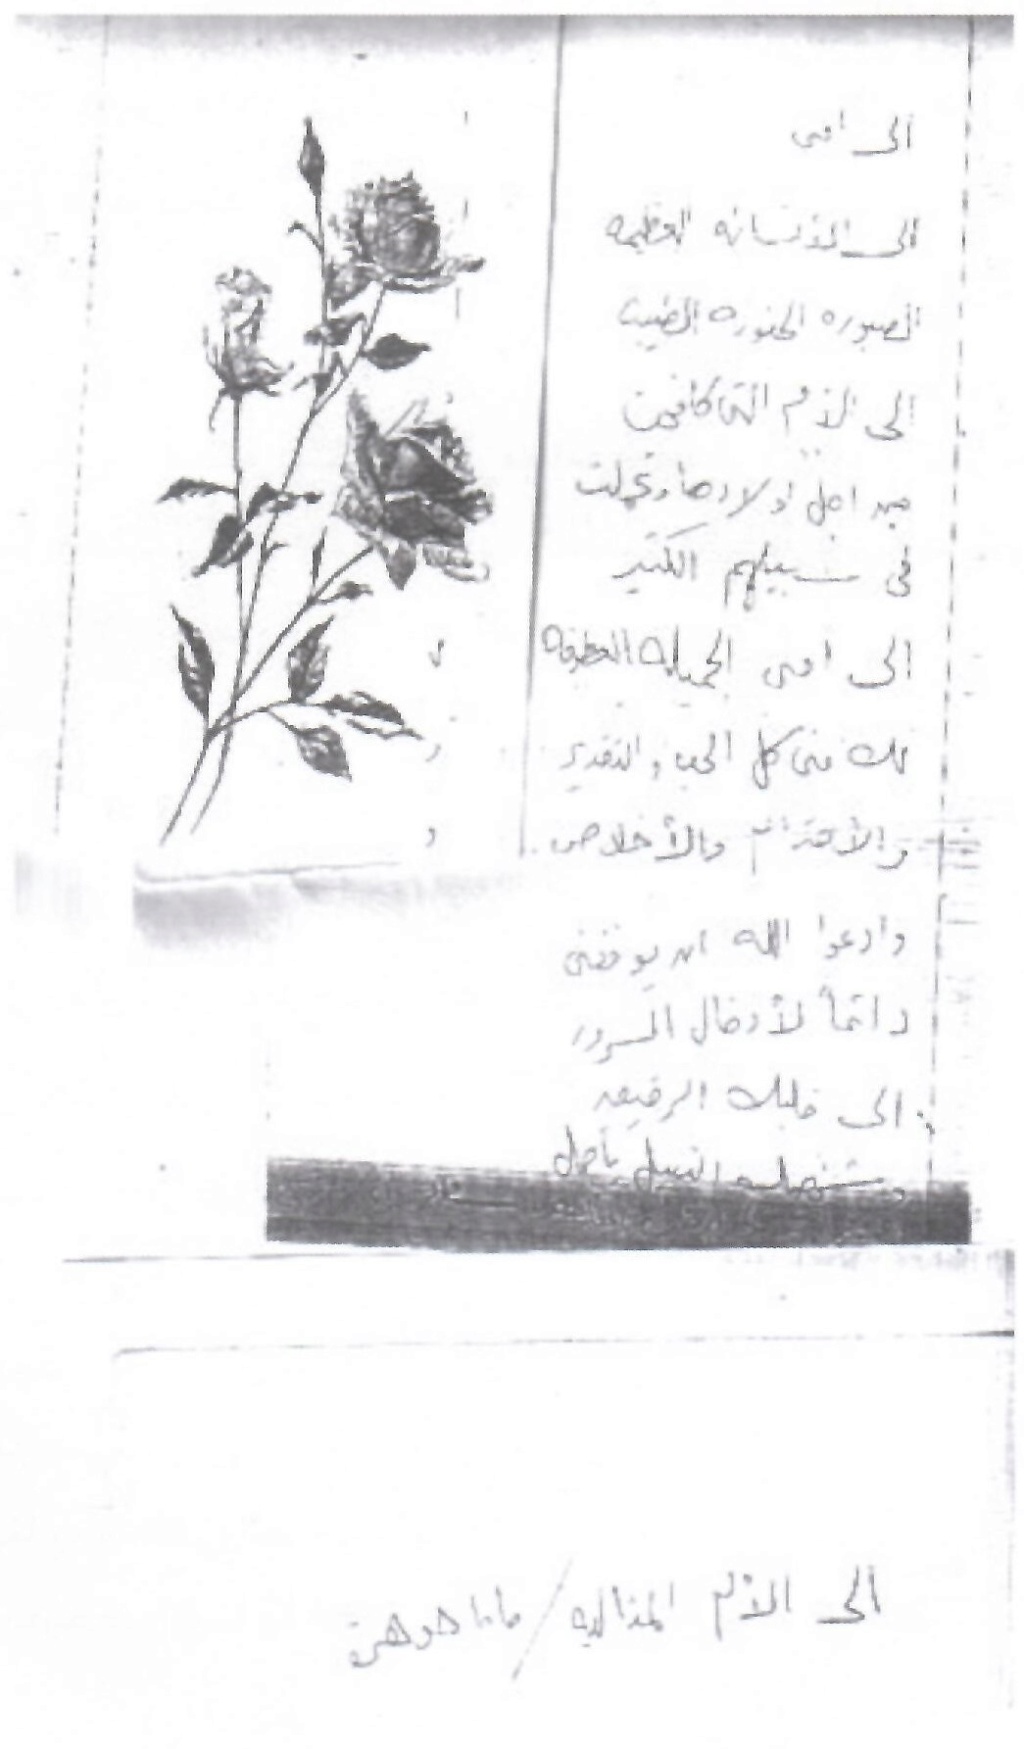 حسني - وثيقة مكتوبة : رسالة تقدير من سعاد حسني إلى أمها 1976 م 2408